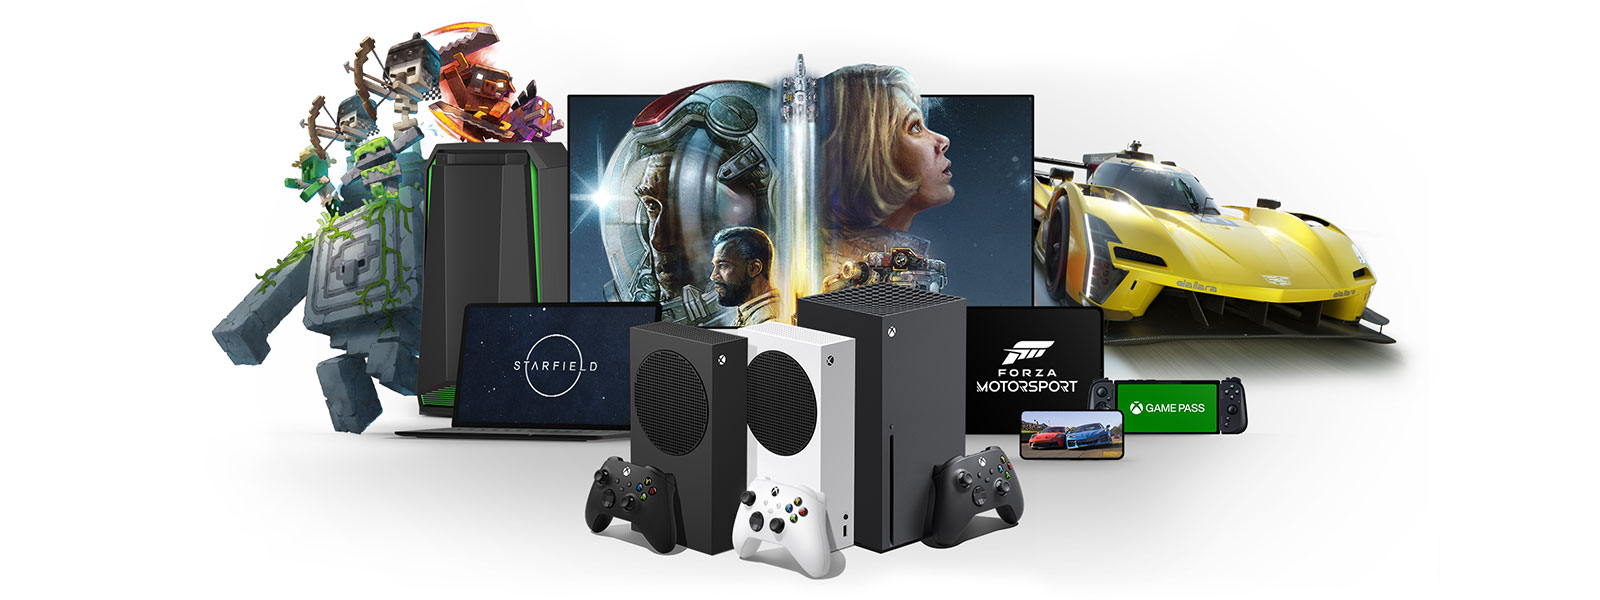 De consoles uit de Xbox-serie zitten voor de tv, laptop, tablet en mobiele apparaten met Starfield, Forza Motorsport en Minecraft Dungeons.